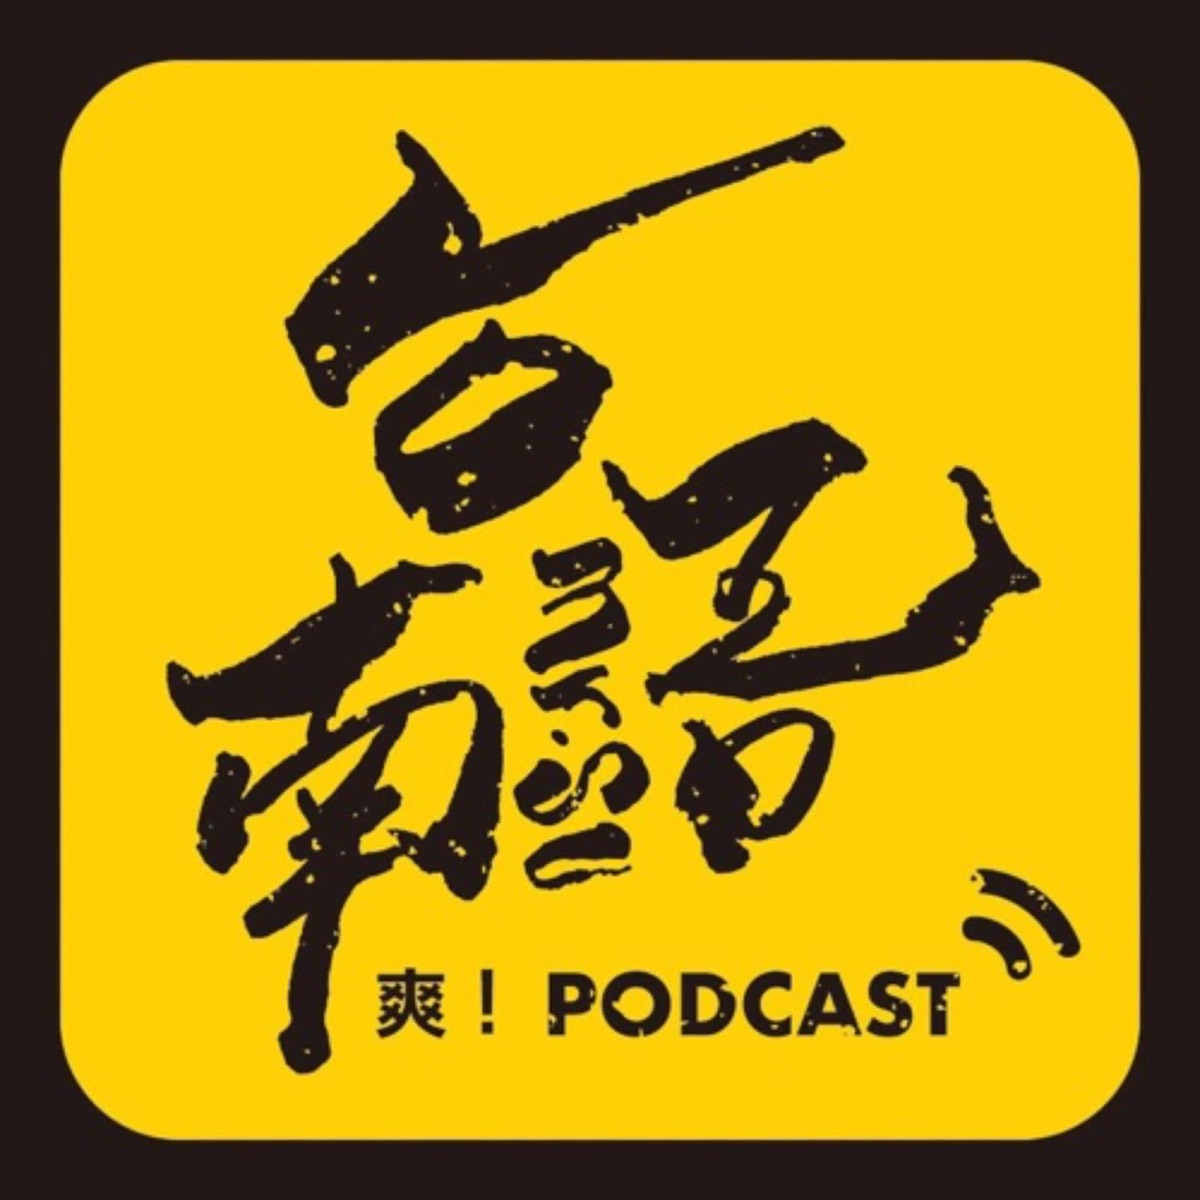 台南語爽 Podcast Podcast Podtail